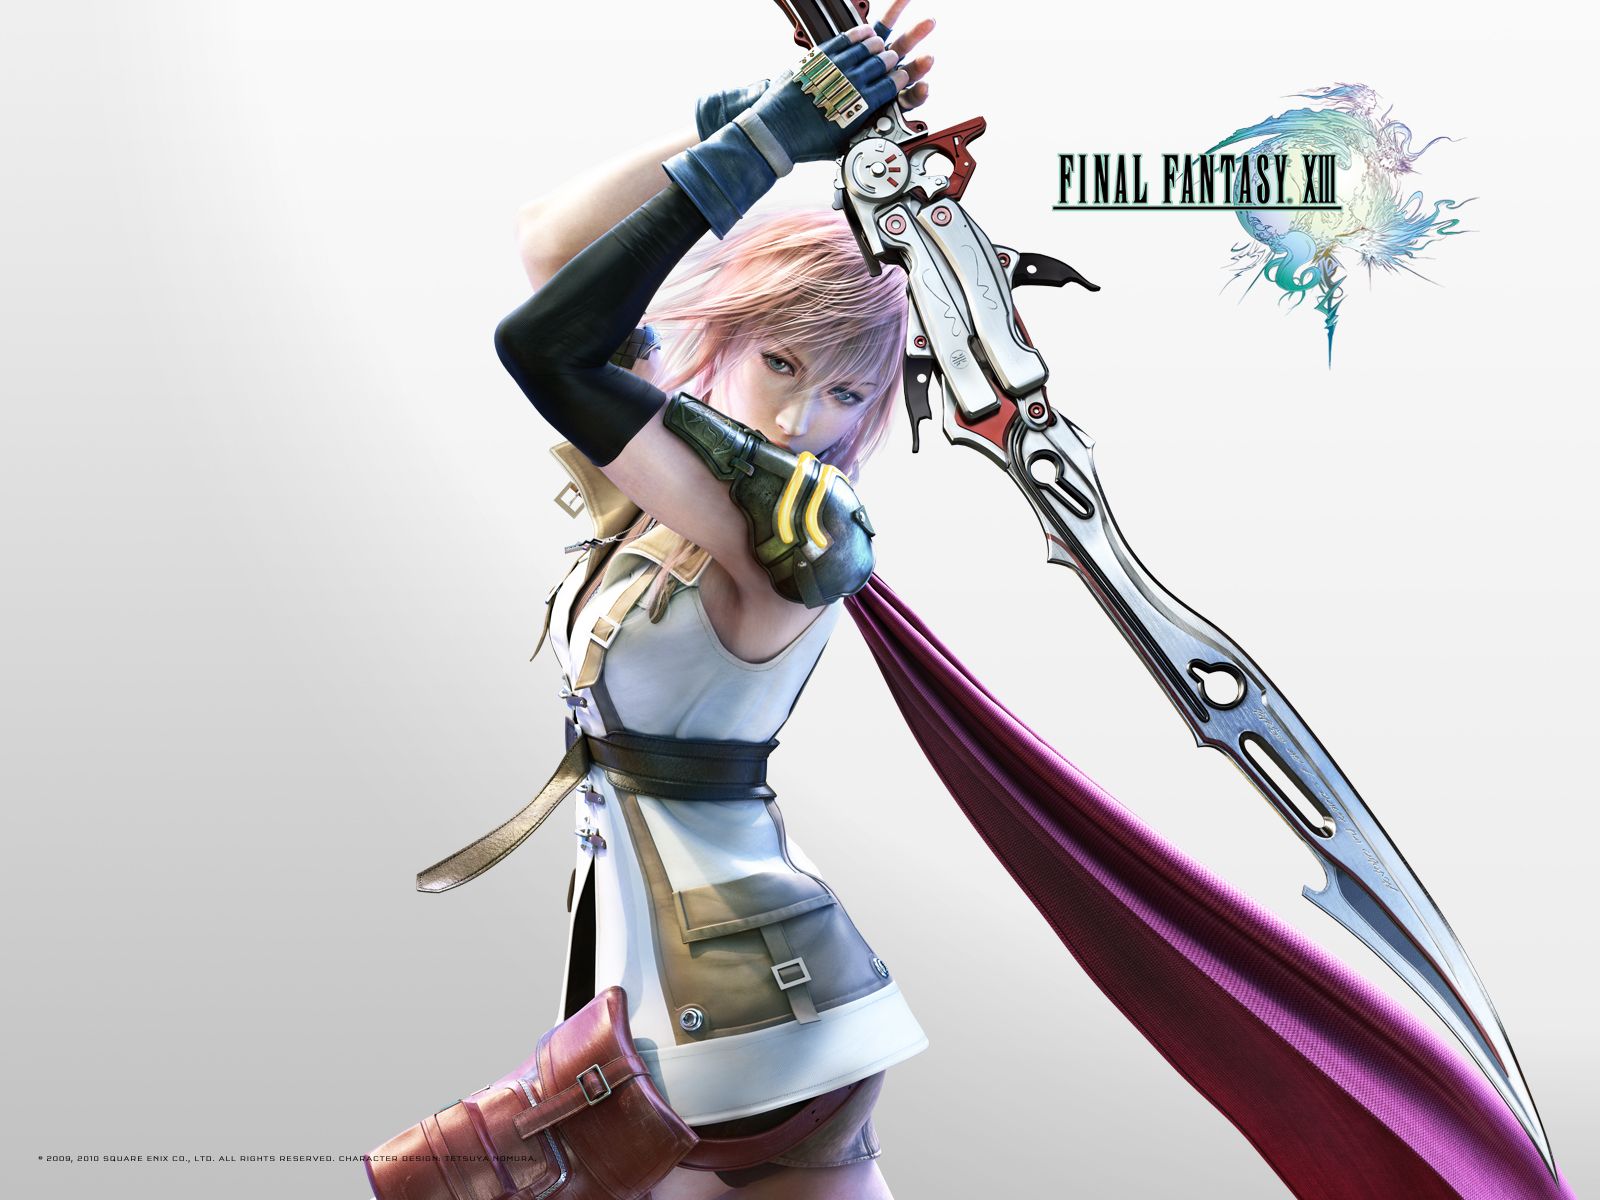 Final Fantasy XIII / FFXIII / FF13